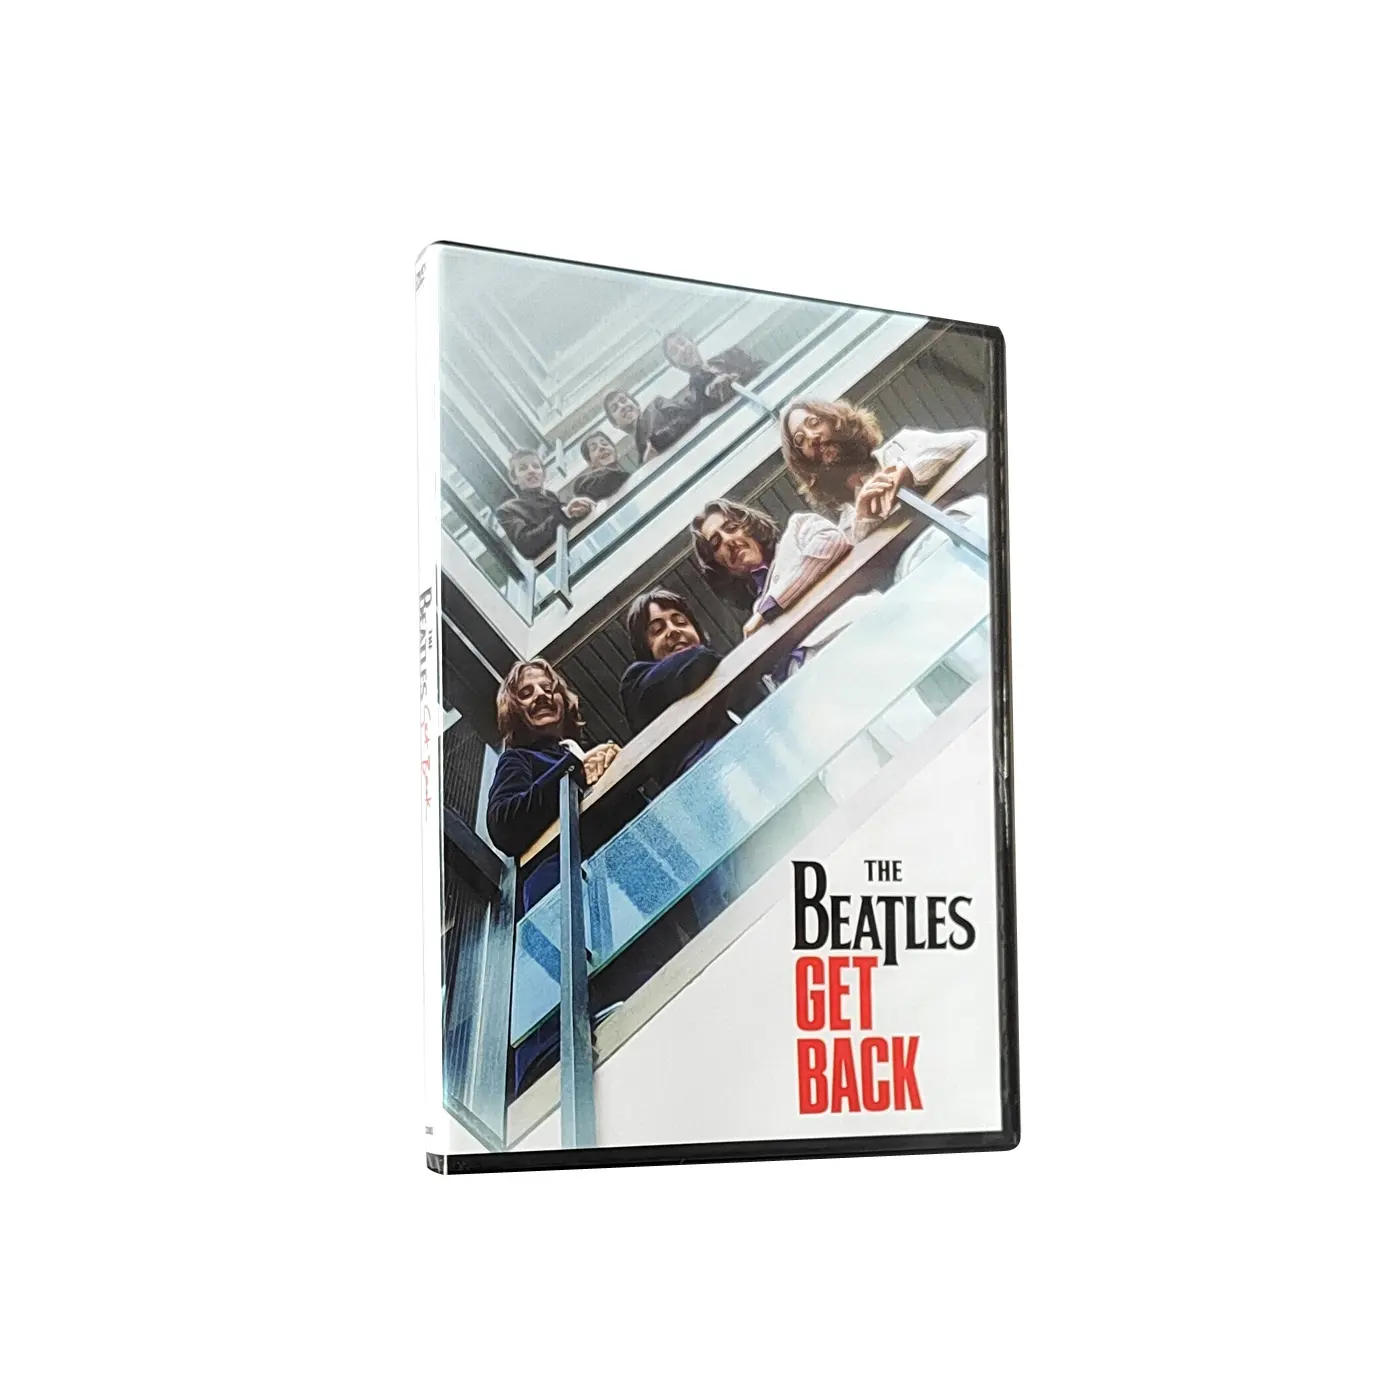 새로운 중국 무료 배송 공장 DVD 박스 세트 영화 필름 디스크 복제 인쇄 TV 쇼 비틀즈 다시 3 디스크